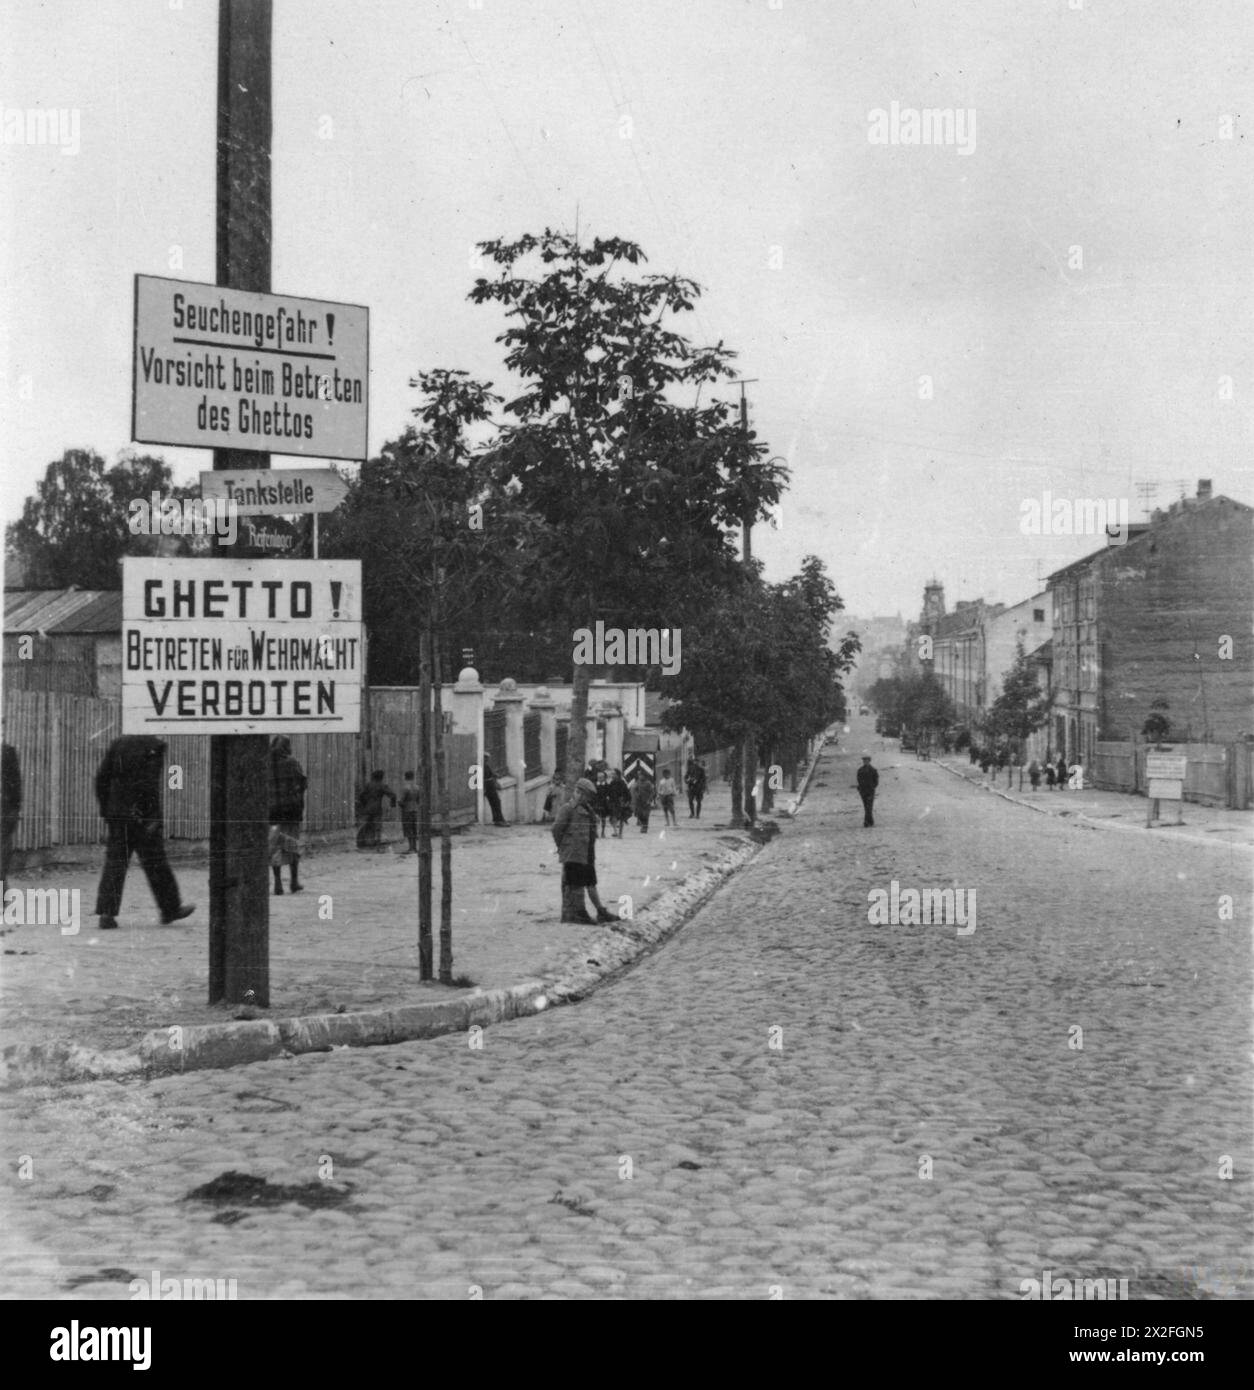 L'OCCUPATION ALLEMANDE DE LA POLOGNE, 1941-1945 - photographie prise par un soldat de la 1re compagnie du 310e bataillon de l'armée territoriale (bataillon Landesschützen 310) alors que l'unité était stationnée dans la ville voisine de Chełm entre le 8 août et le 1er octobre 1941. Juifs dans la rue dans le ghetto de Lublin, probablement près de l'une des portes d'entrée car il y a des panneaux 'Ghetto! Betreten für Wehrmacht verboten - entrée pour la Wermacht interdite' et 'Seuchengefahr! Vorsicht beim Betreten des ghettos - danger d'infection! Attention en entrant dans l'armée allemande visible du ghetto Banque D'Images